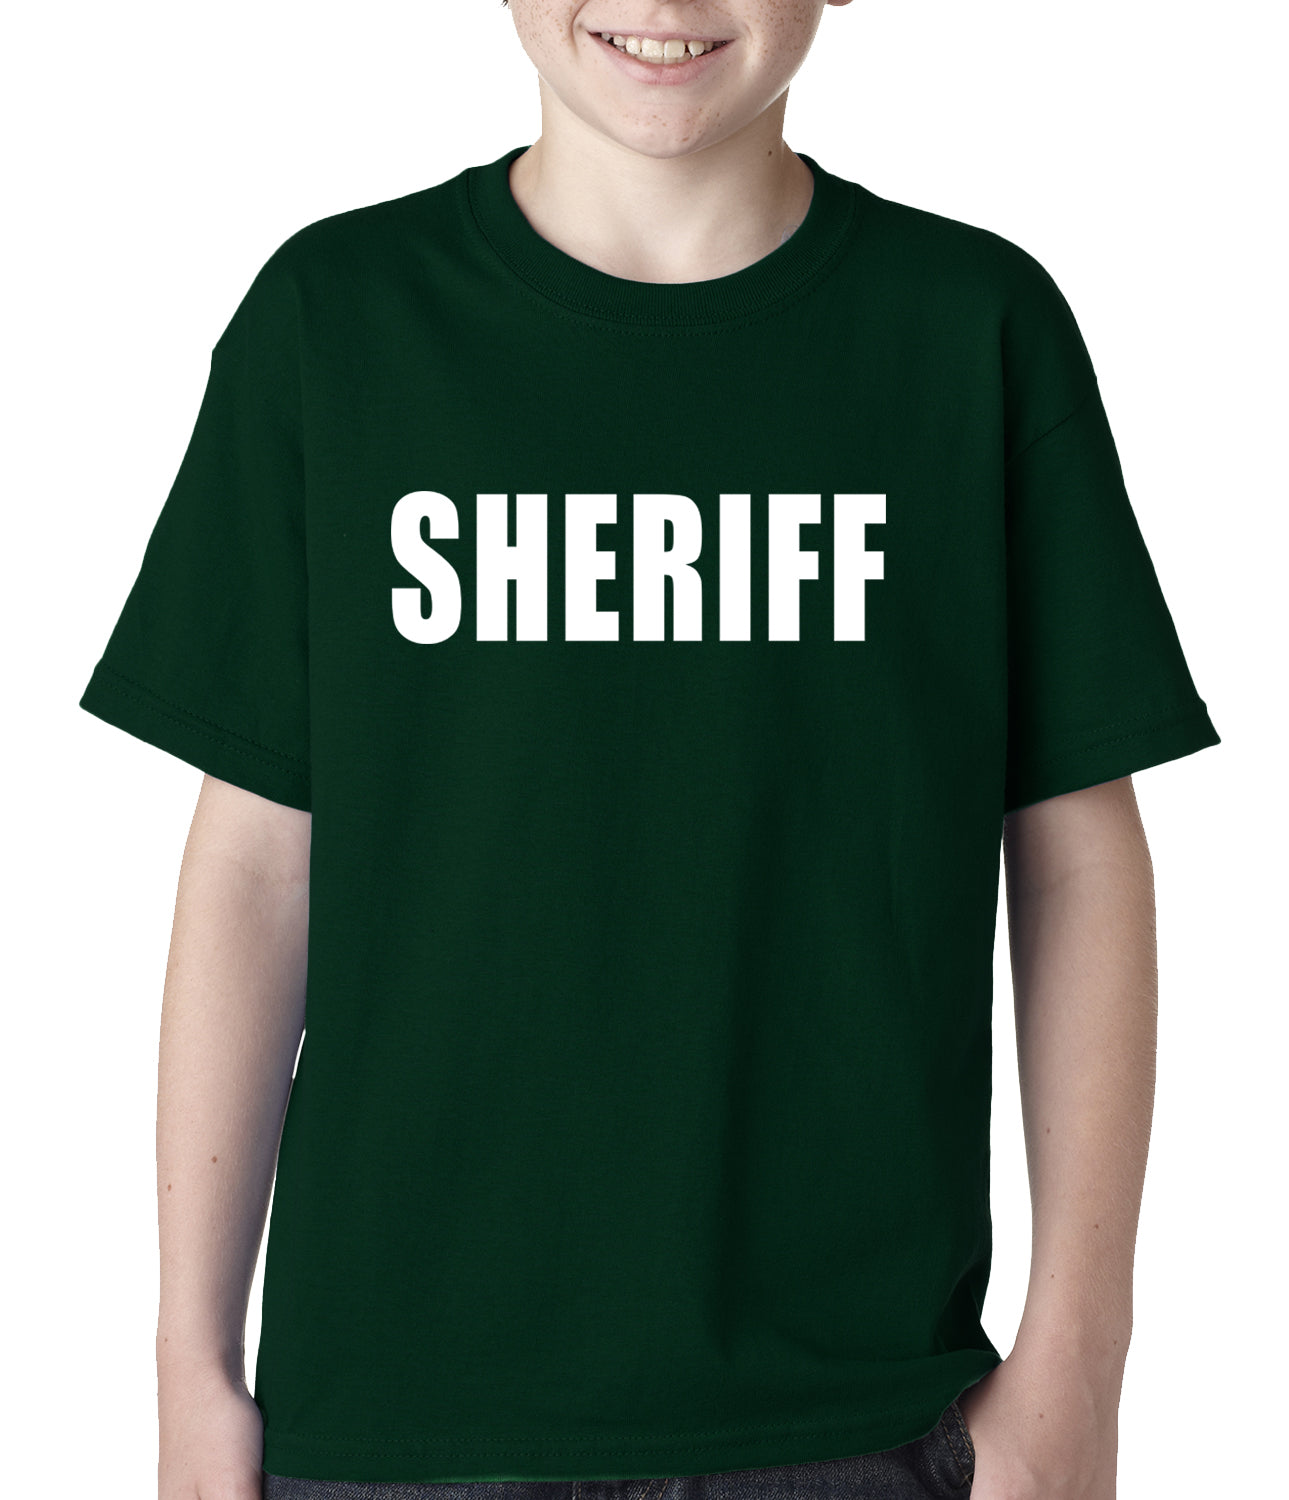 Sheriff Costum Kids T-shirt